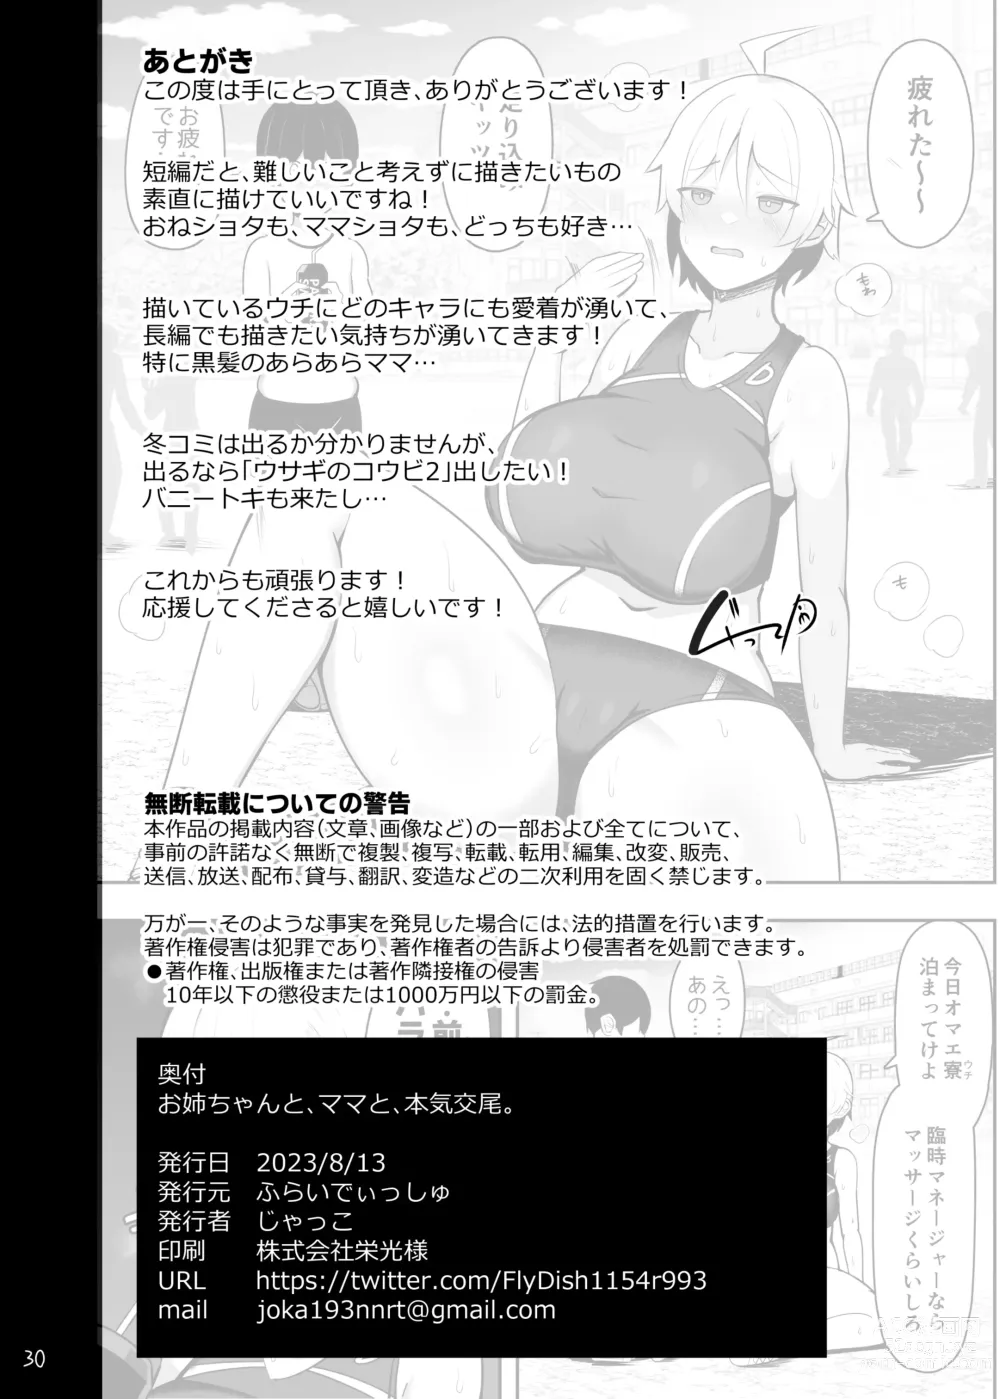 Page 86 of doujinshi Onee-chan to, Mama to, Honki Koubi.